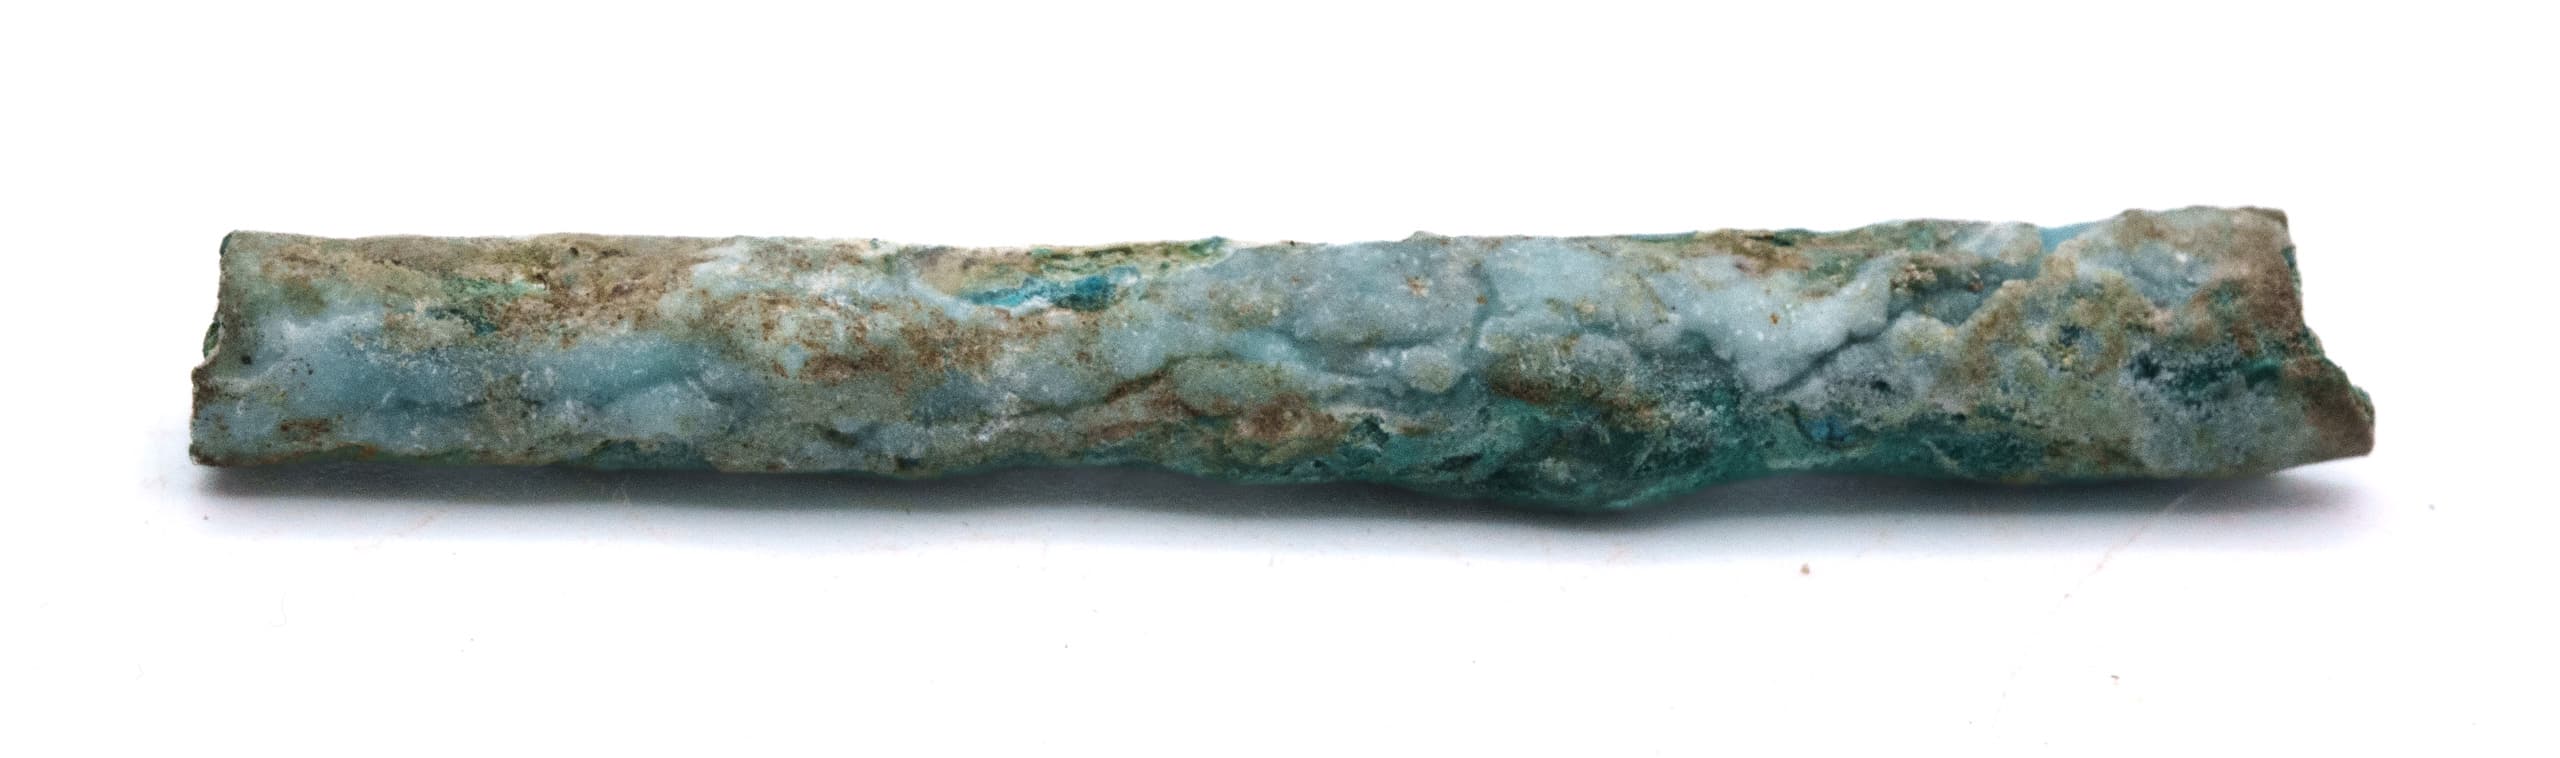 Stalactite délicate d’orthoserpiérite bleu canard. Il s’agit d’un sulfate de cuivre et calcium hydraté de formule chimique : CaCu4(SO4)2(OH)6 · 3H2O. Spécimen récolté par le BRGM dans la mine de Vezzani en Haute-Corse.